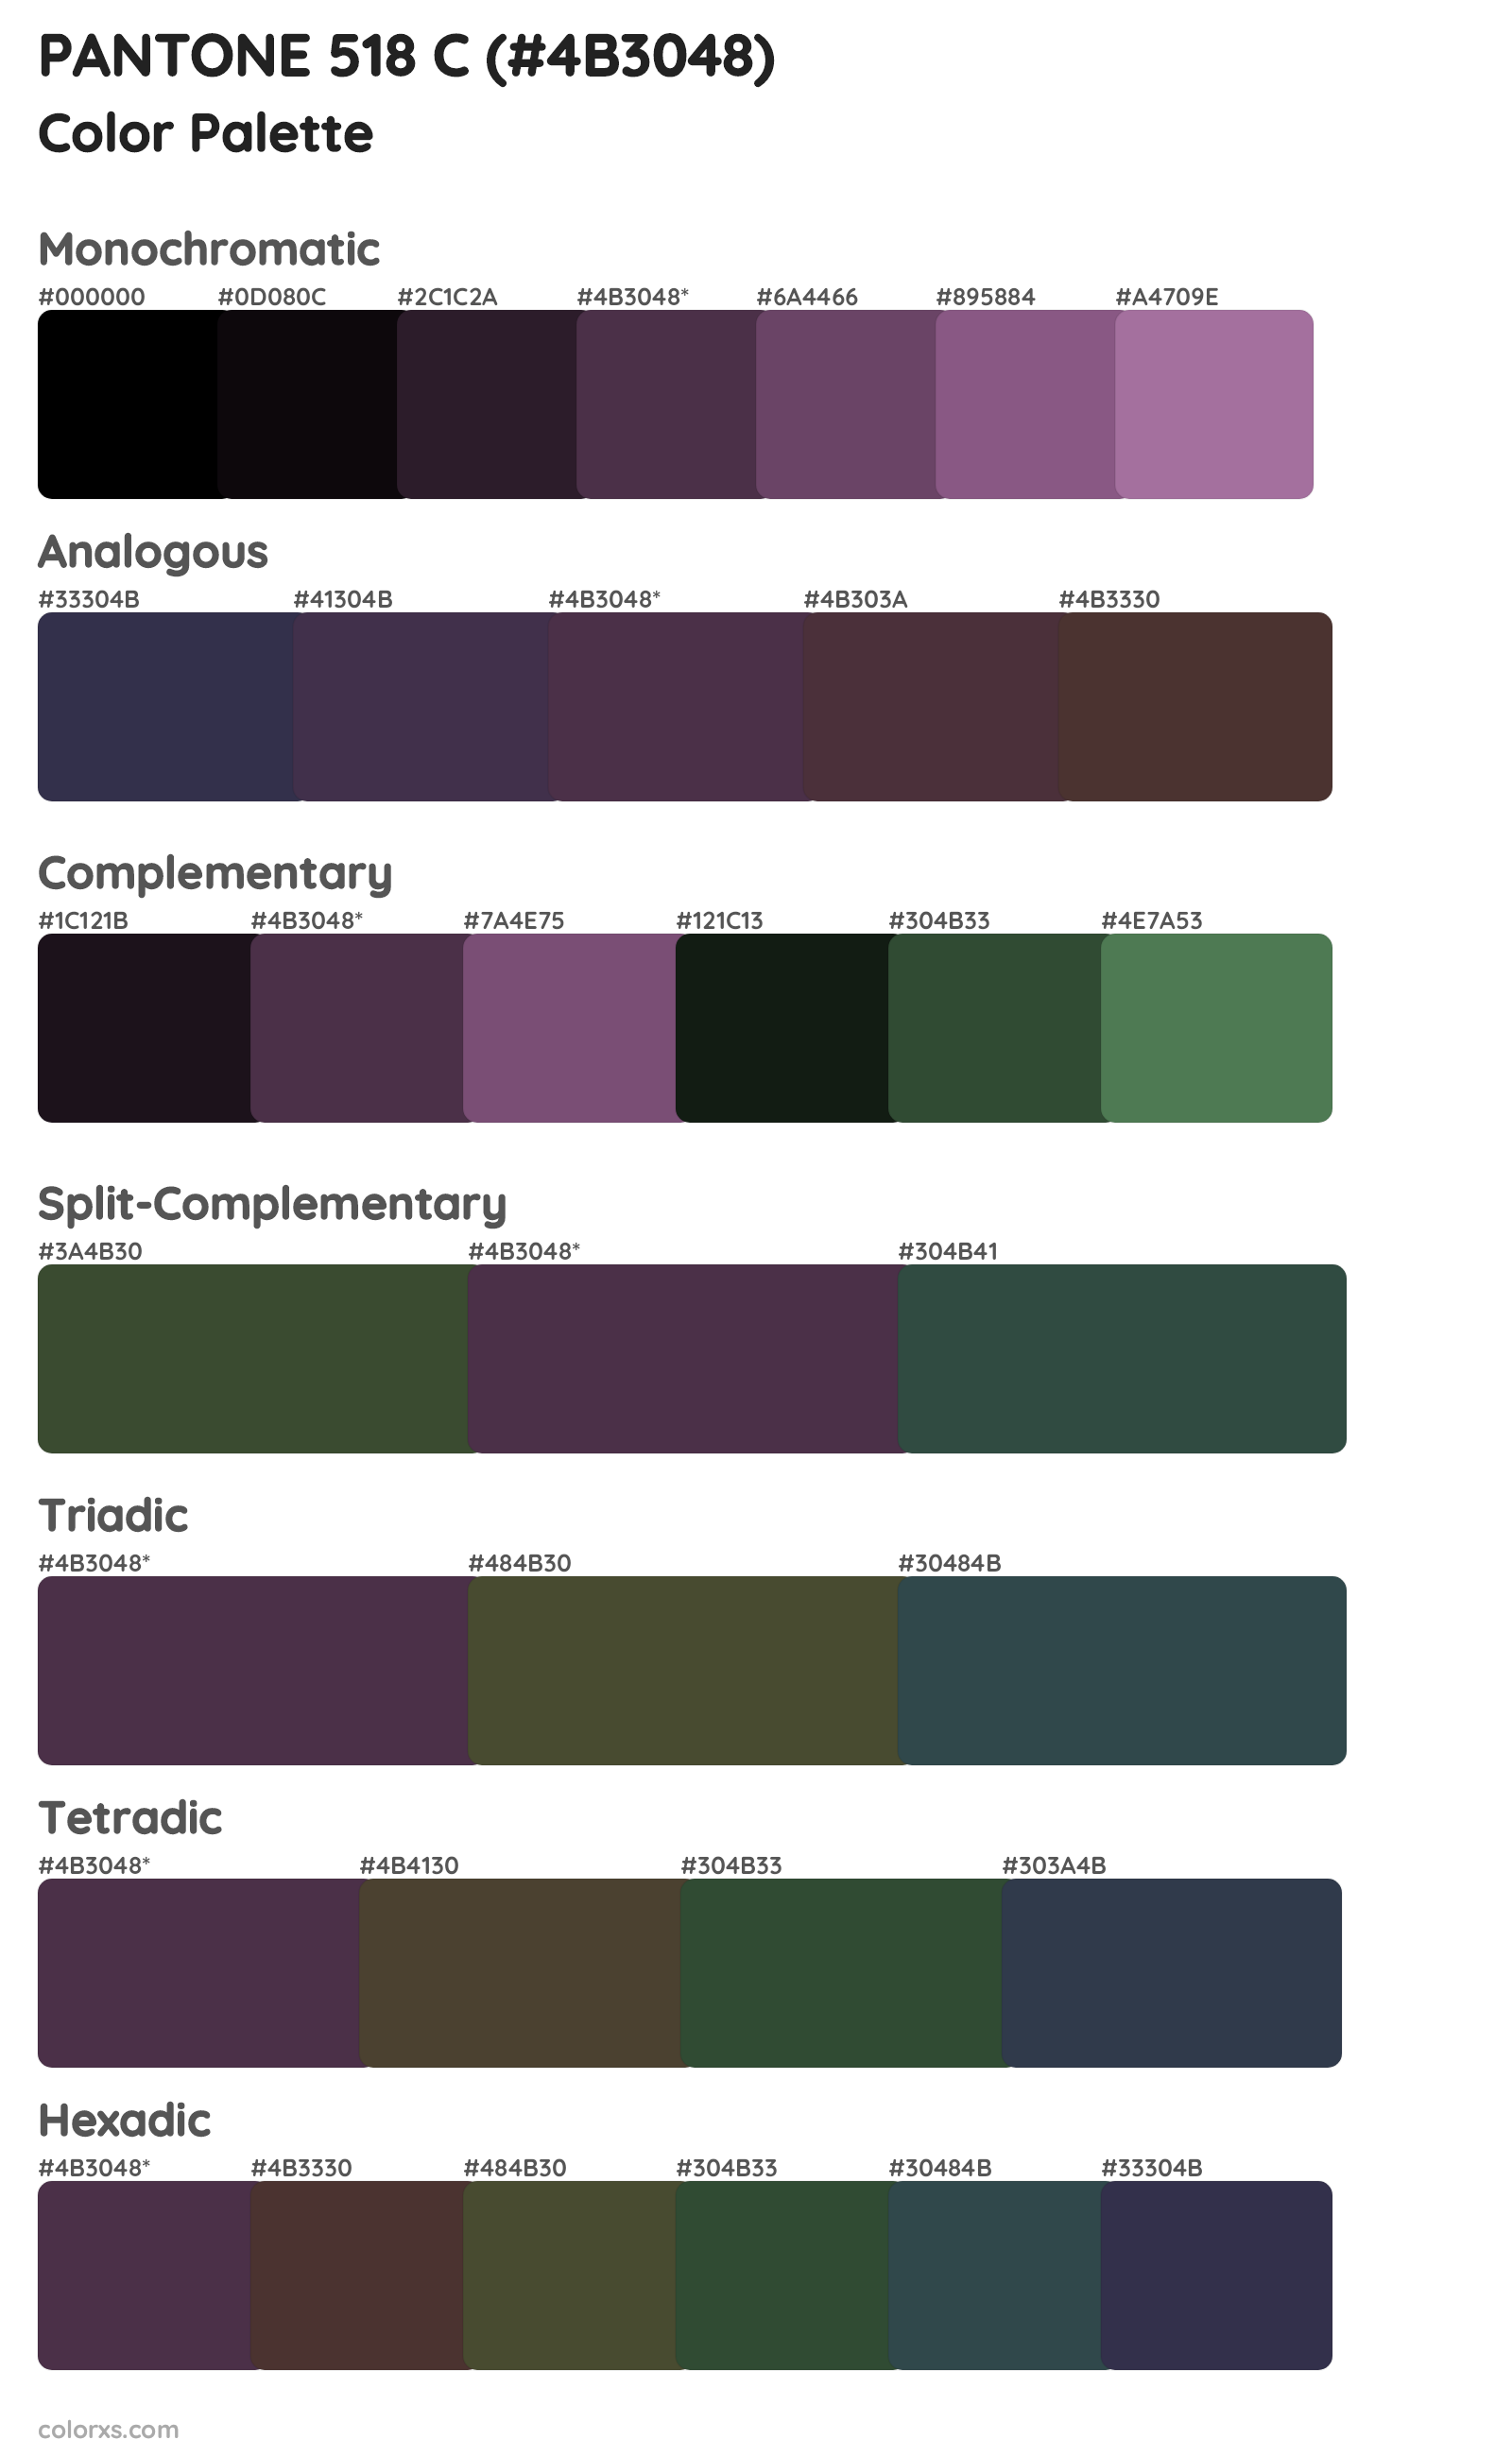 PANTONE 518 C Color Scheme Palettes